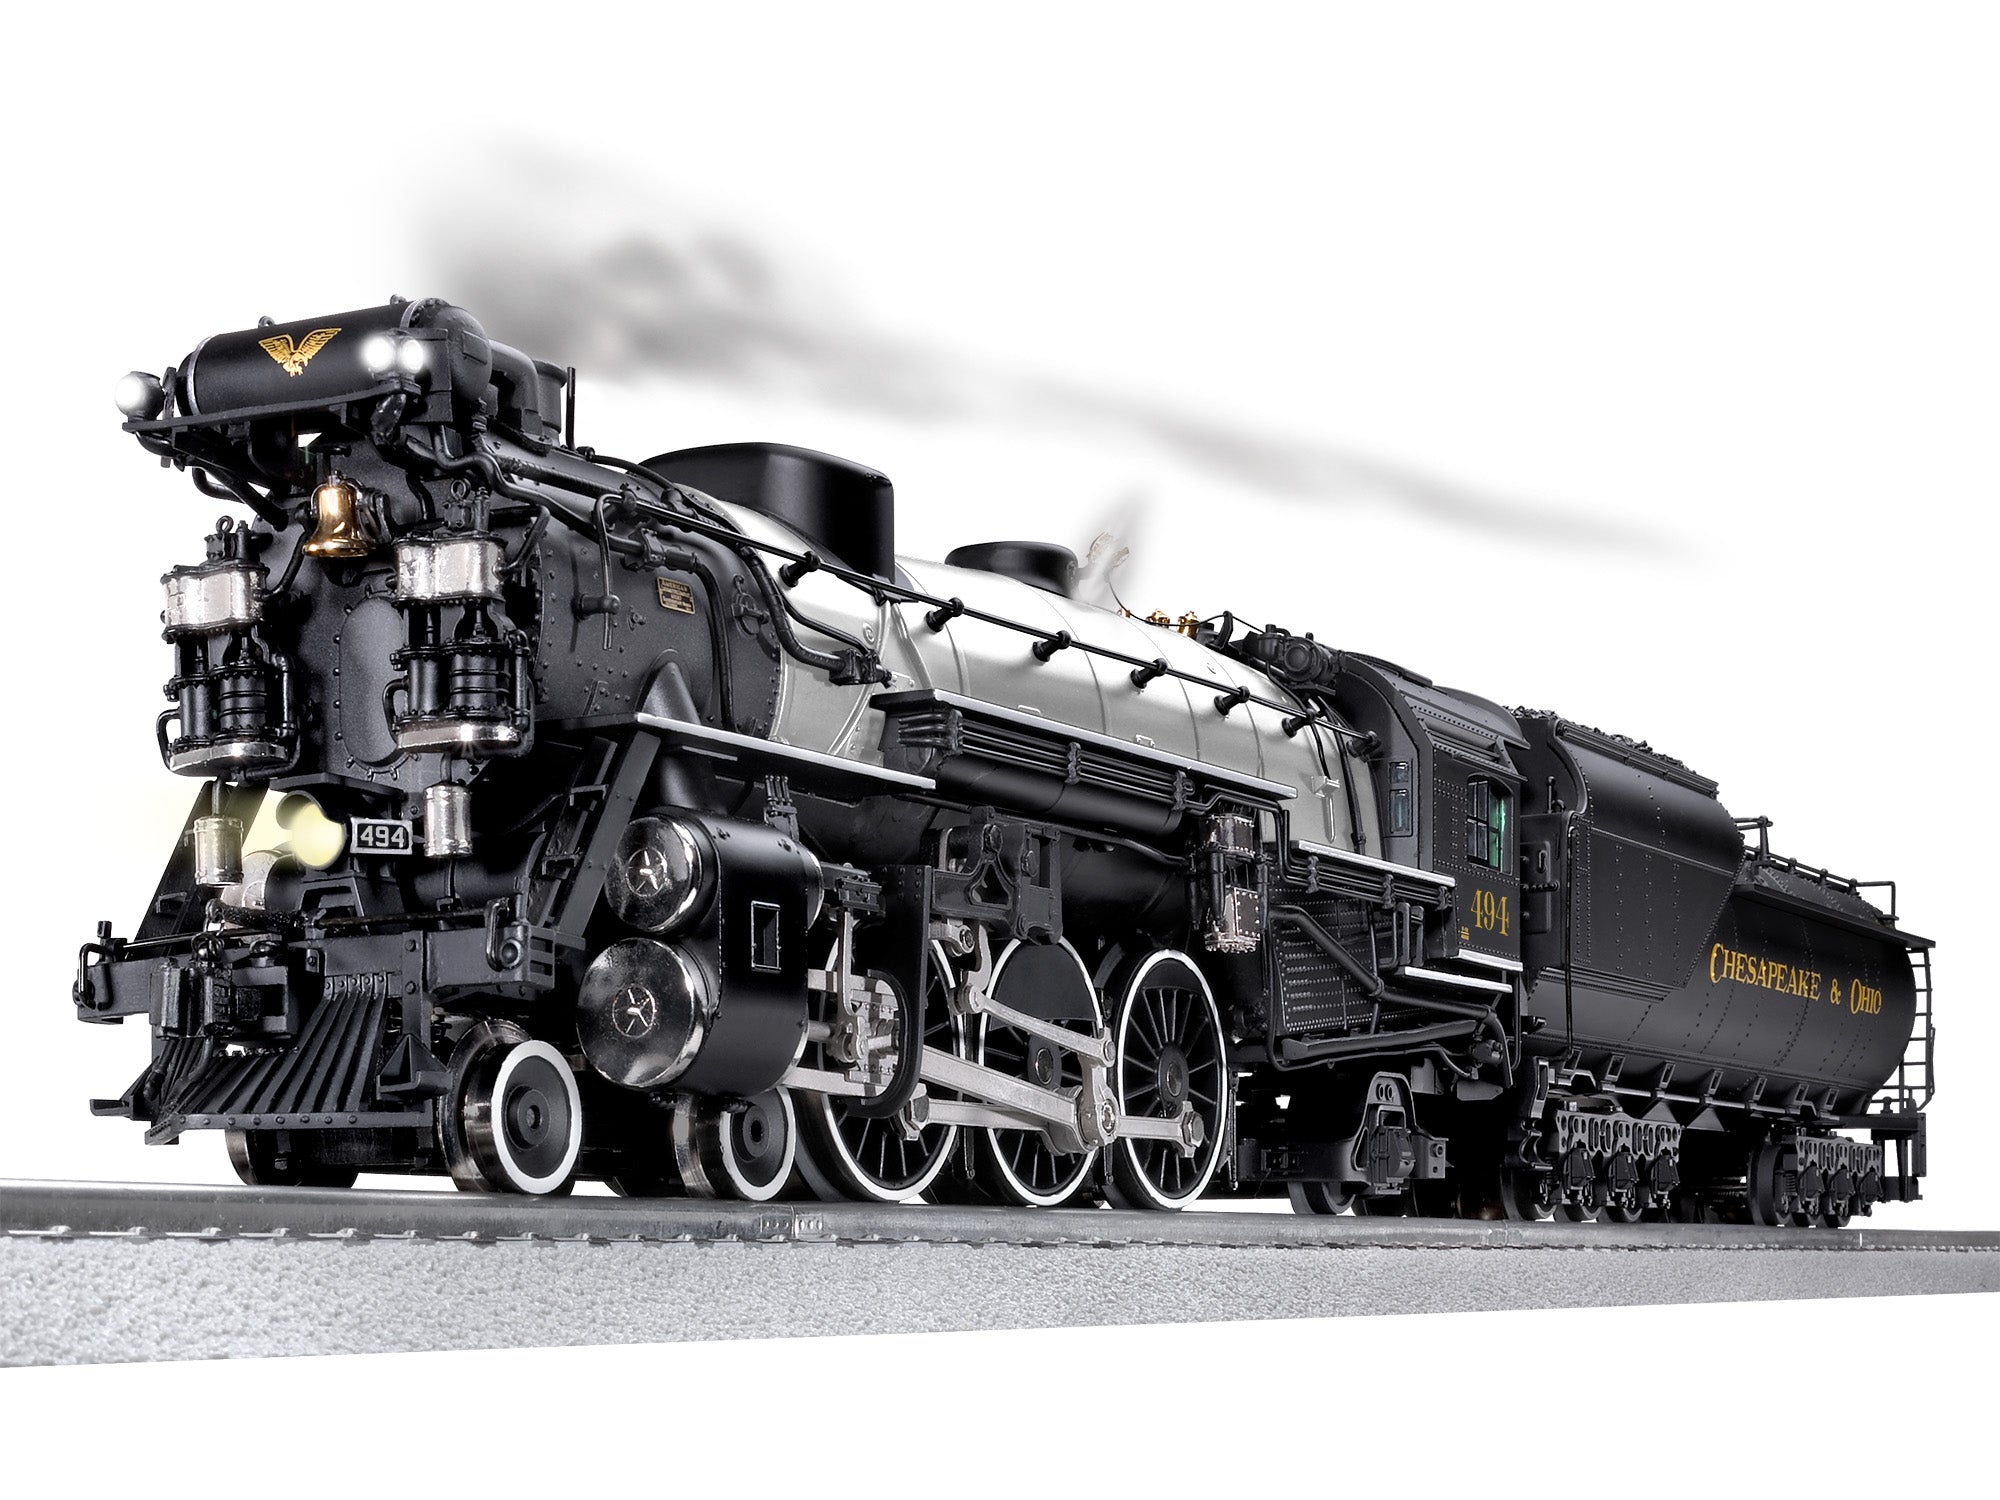 Lionel 2431140 - Legacy F19 Pacific Steam Engine "Chesapeake & Ohio" #494 (Gray Boiler)